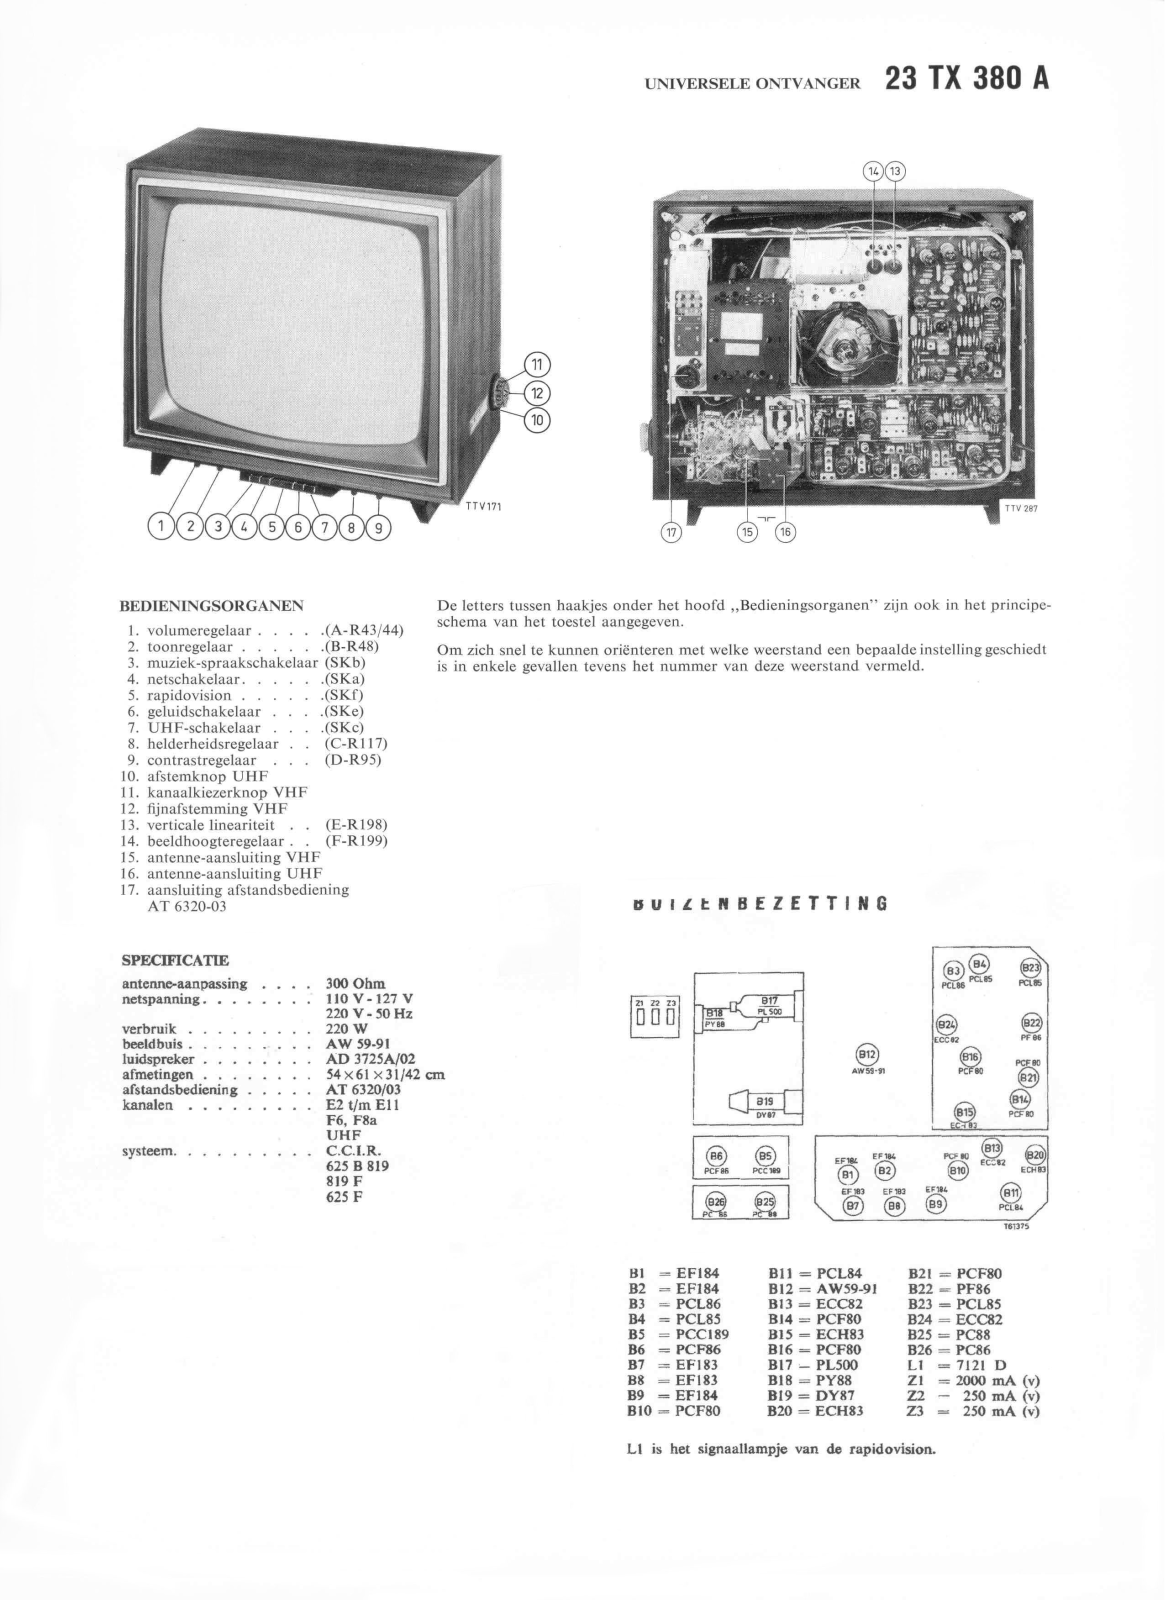 Philips 23tx380a Schematic